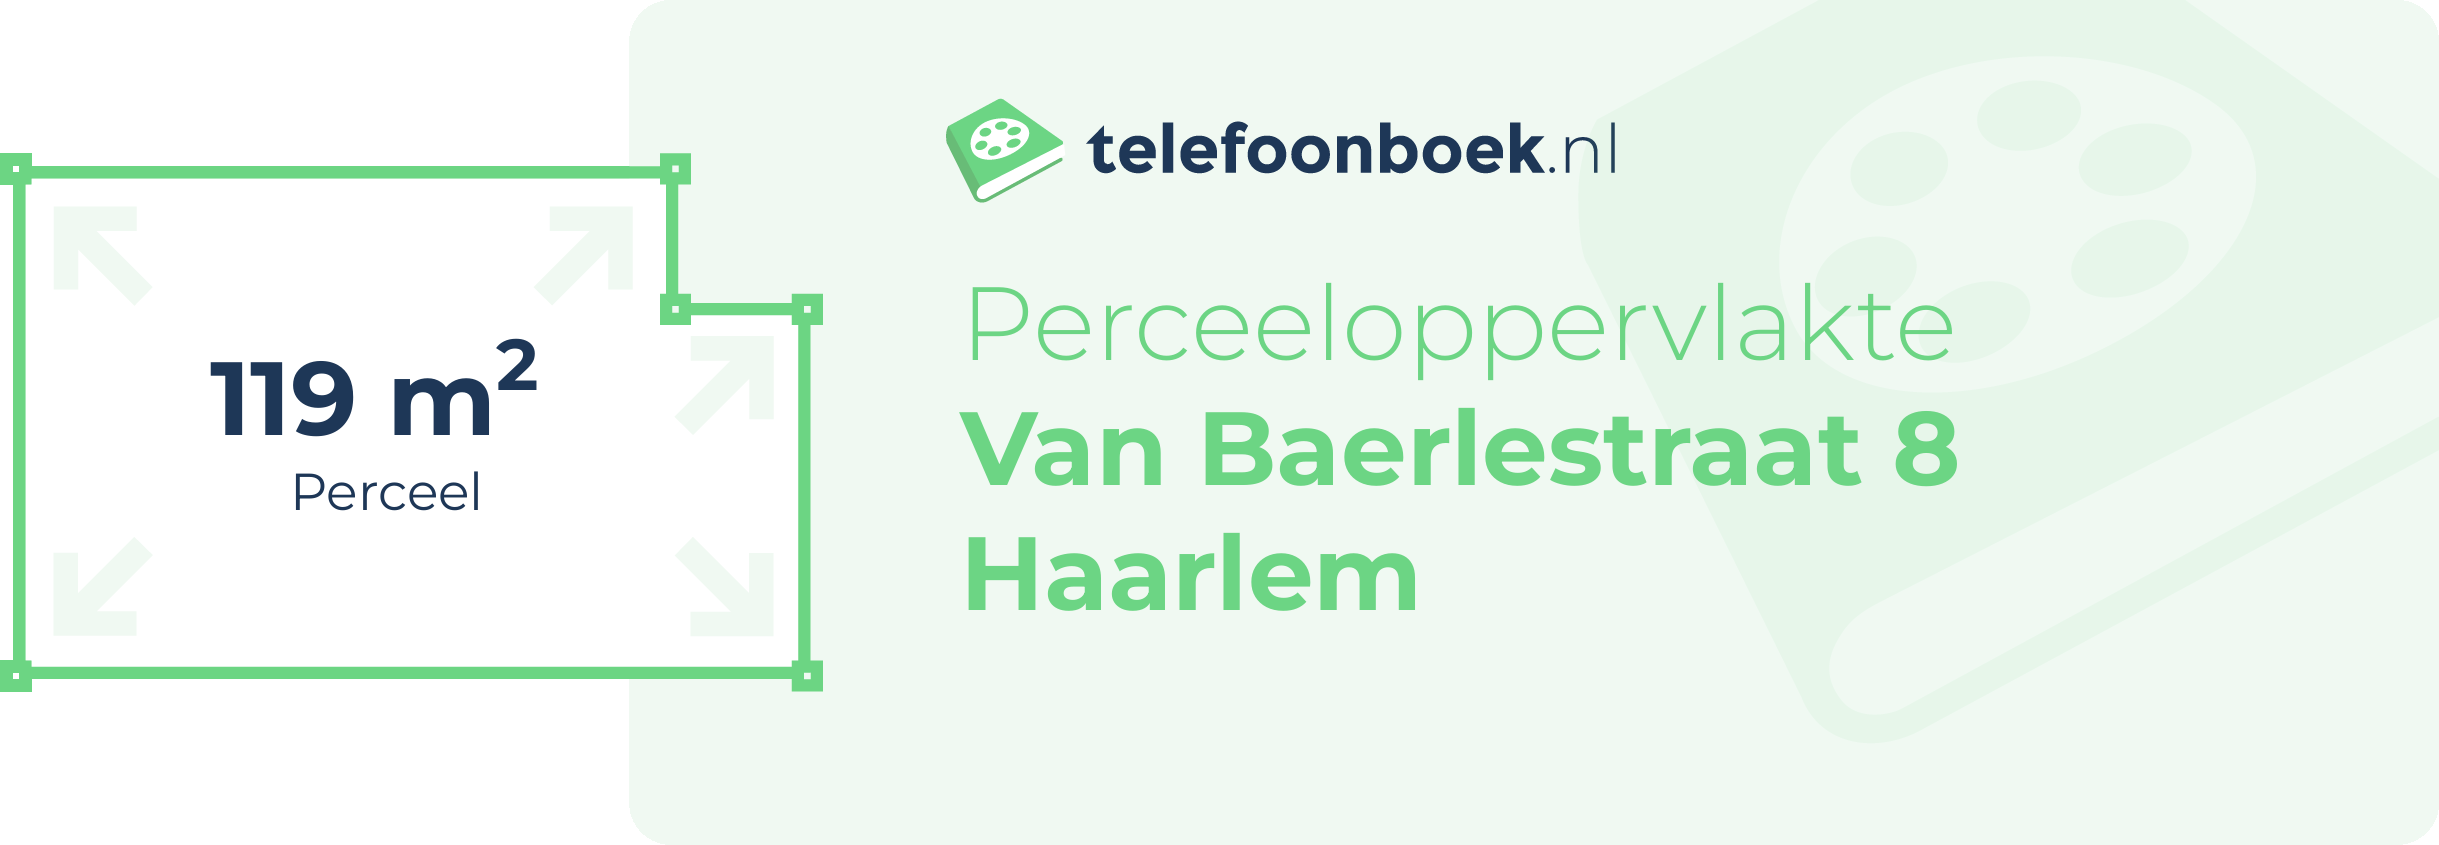 Perceeloppervlakte Van Baerlestraat 8 Haarlem